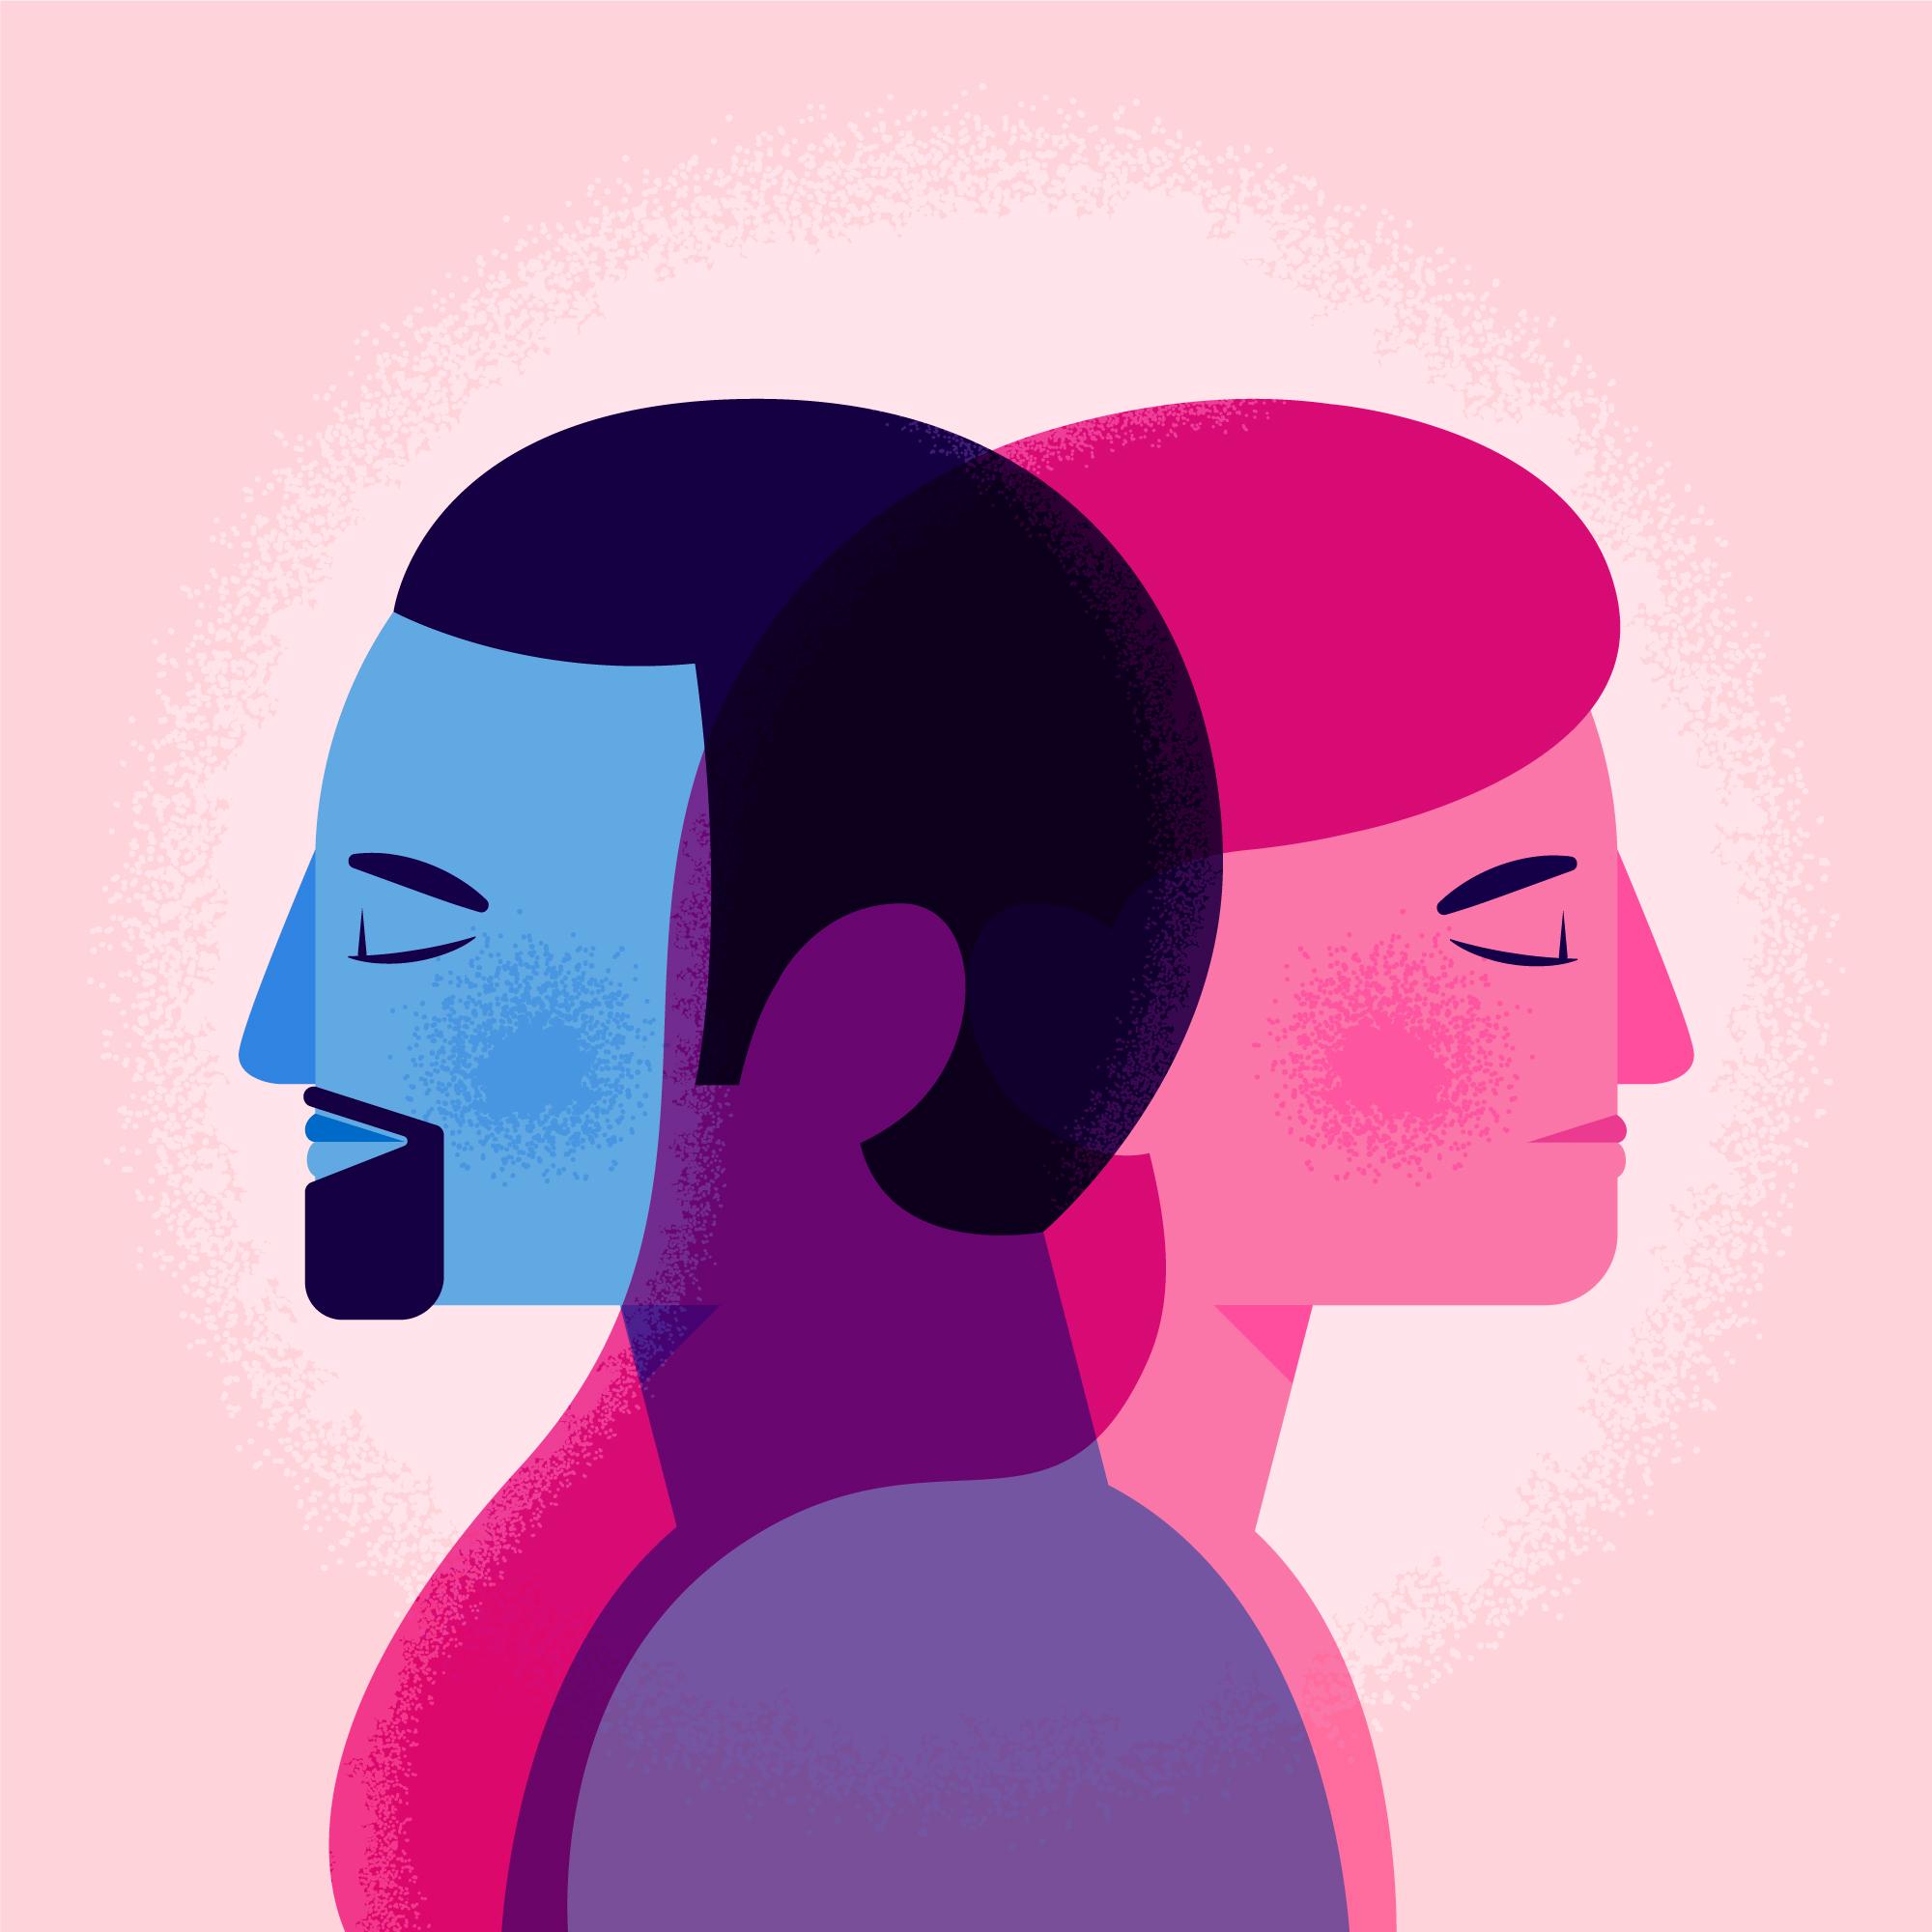 Illustratie van twee personen in roze en blauw